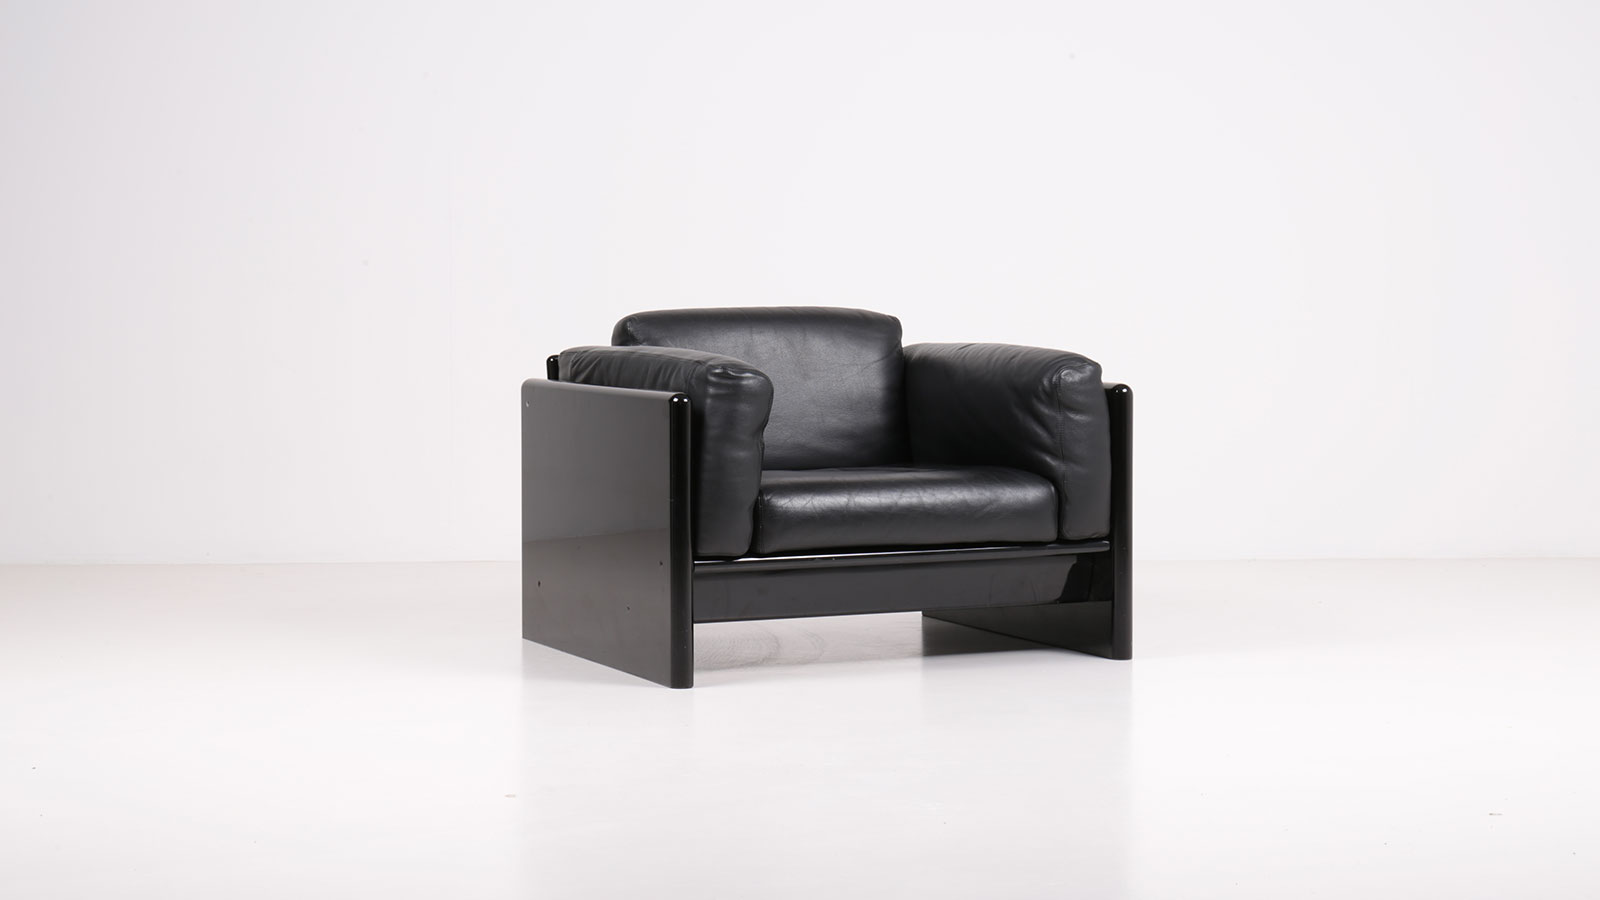 Arnolfo armchair by Ufficio Progetti Gavina | Paradisoterrestre